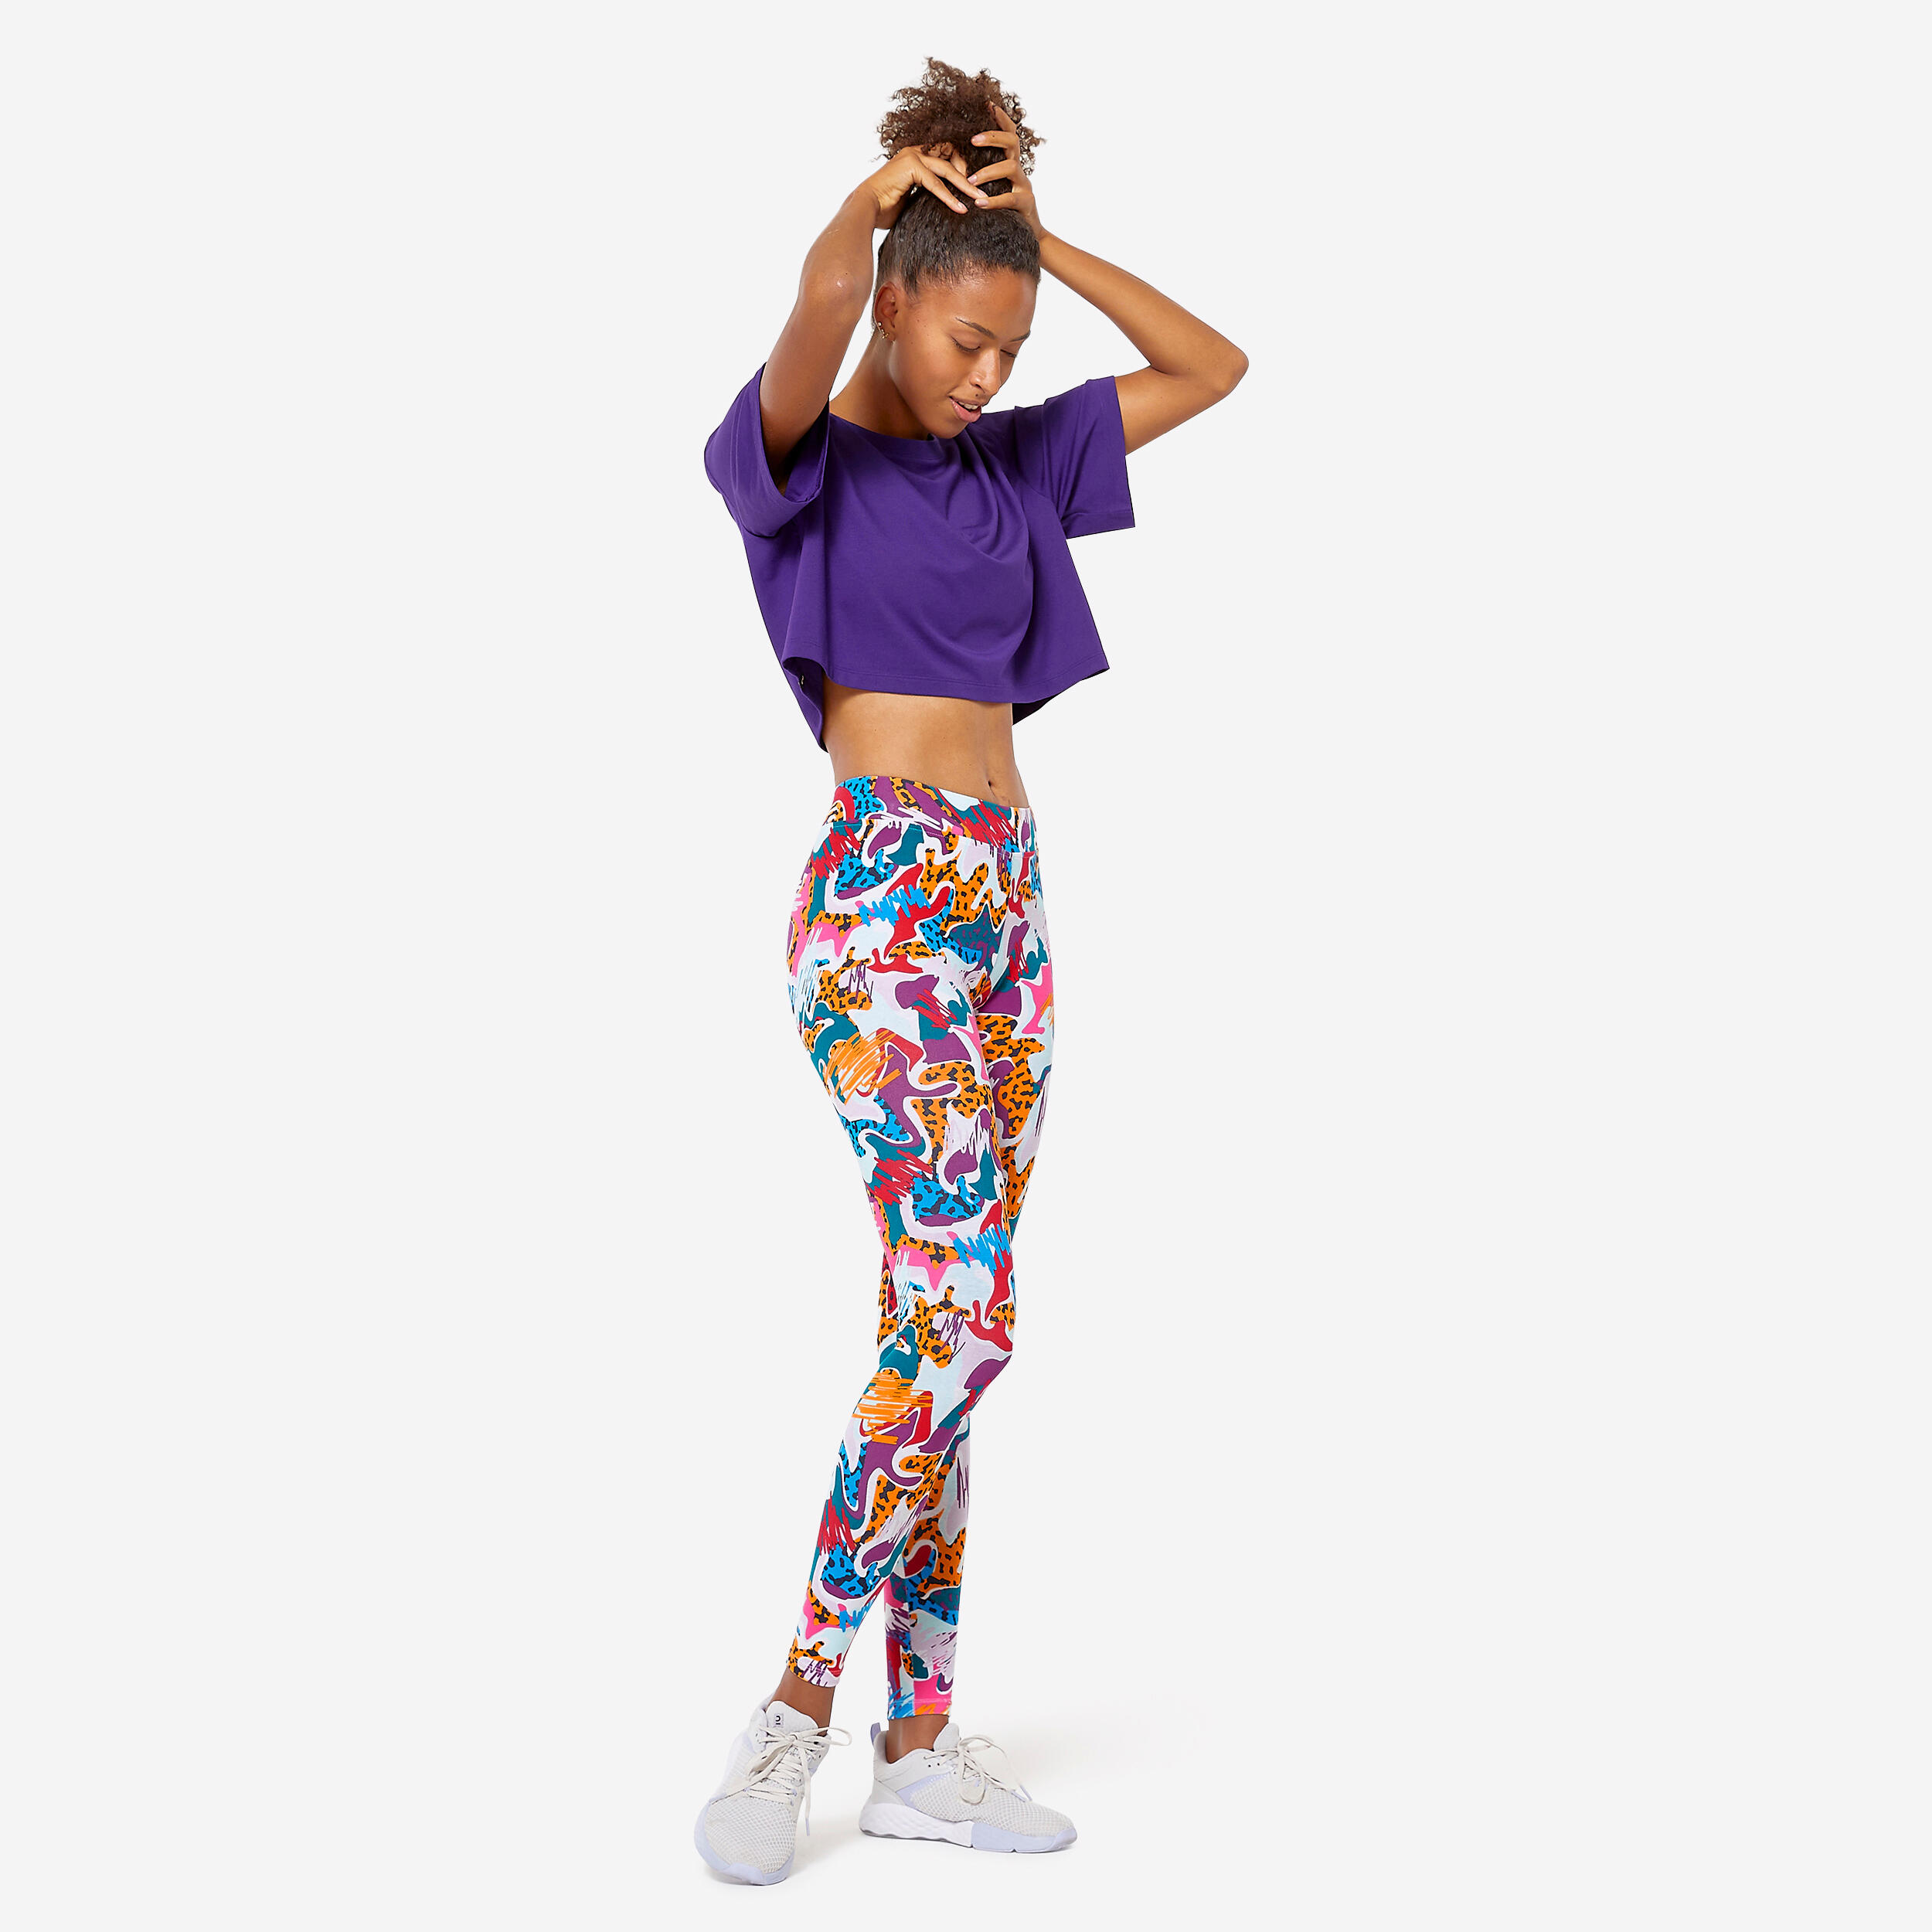 Women's Slim Fitness Leggings Fit+ 500 - Multicolour Print 2/6